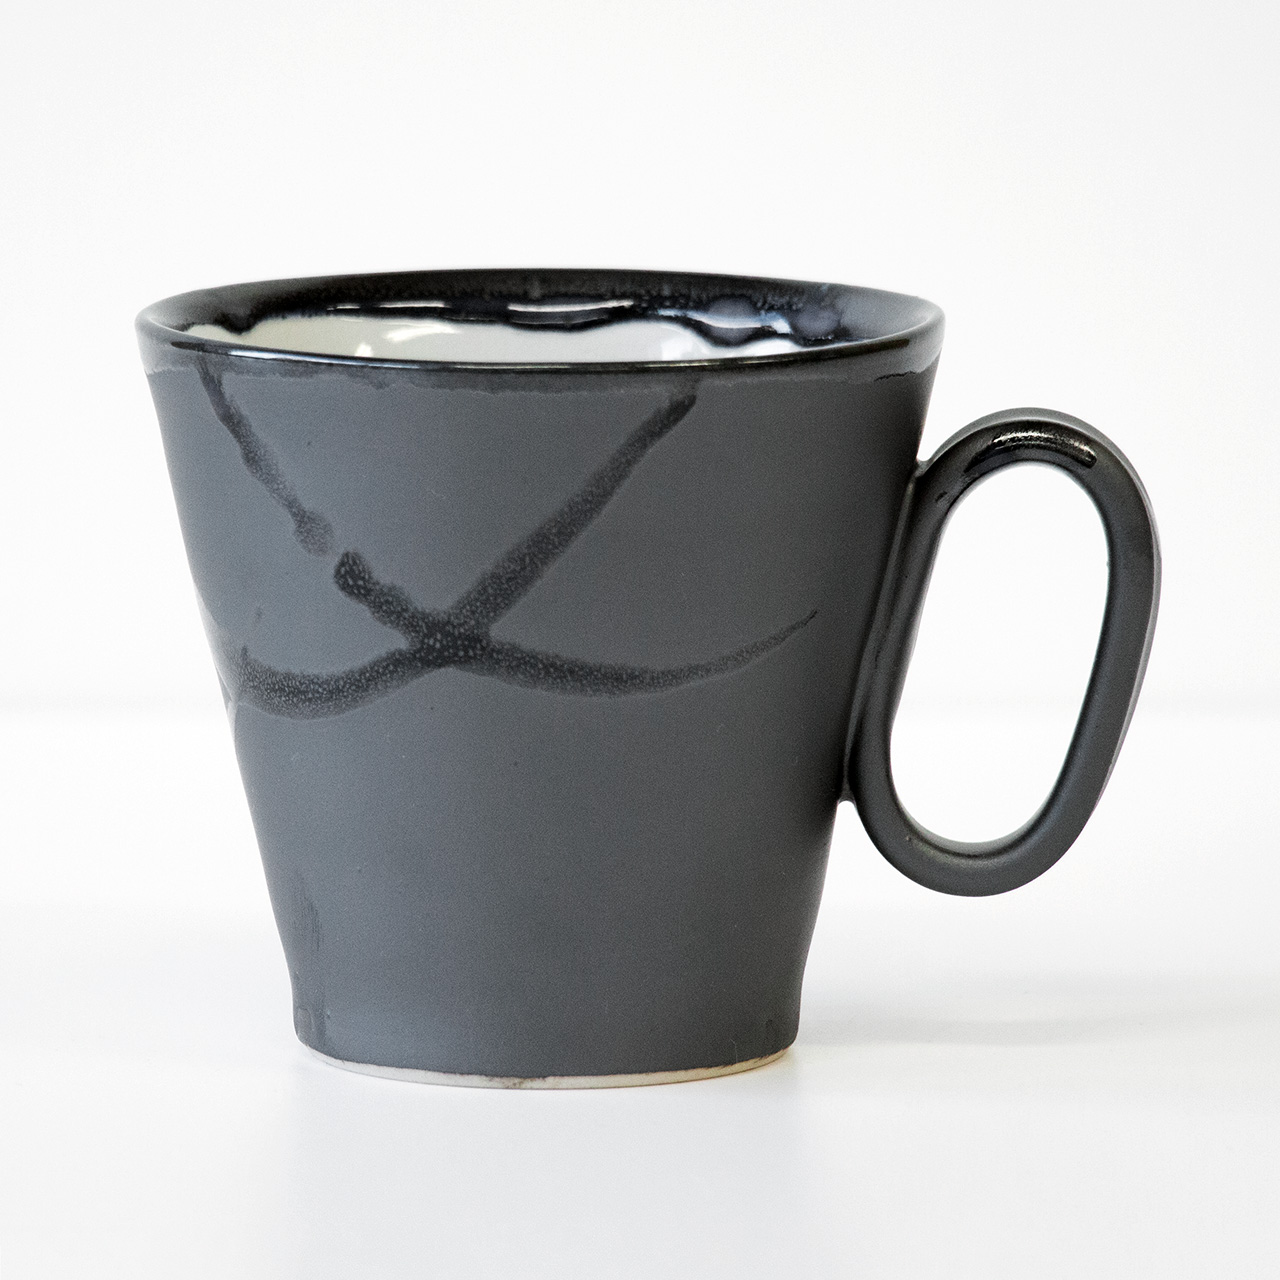 生涯を添い遂げるマグ 大堀相馬焼 マグカップ コーヒーカップ 陶器 陶磁器 日本製 福島 image number 0